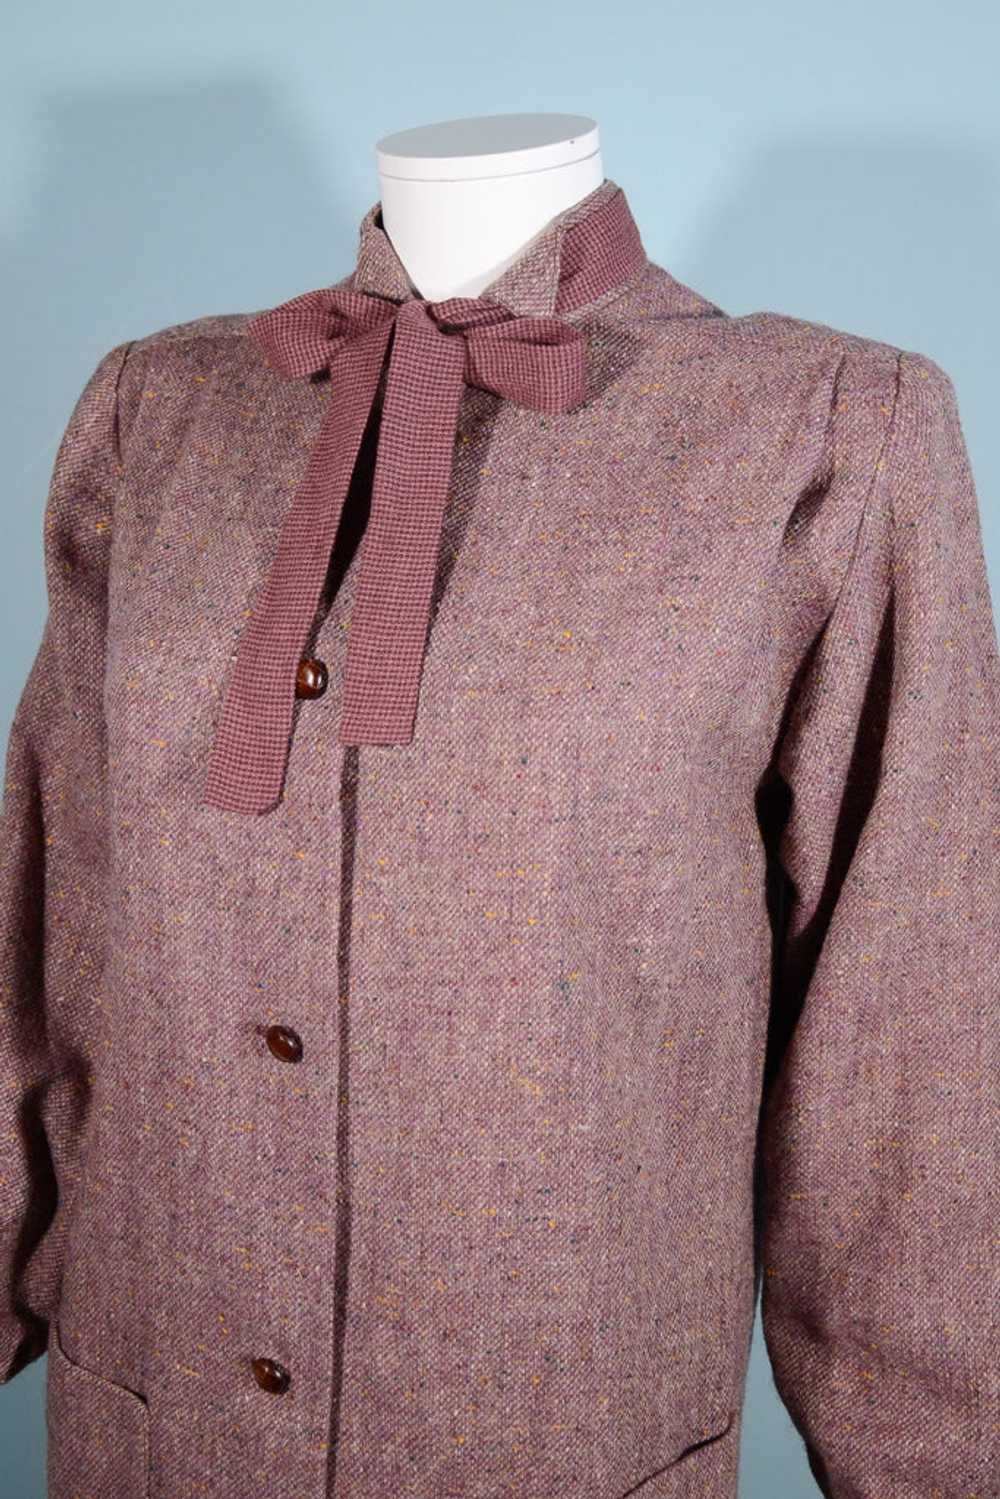 Vintage 70s Tweed Overcoat + Tie Neckline, Dark A… - image 7